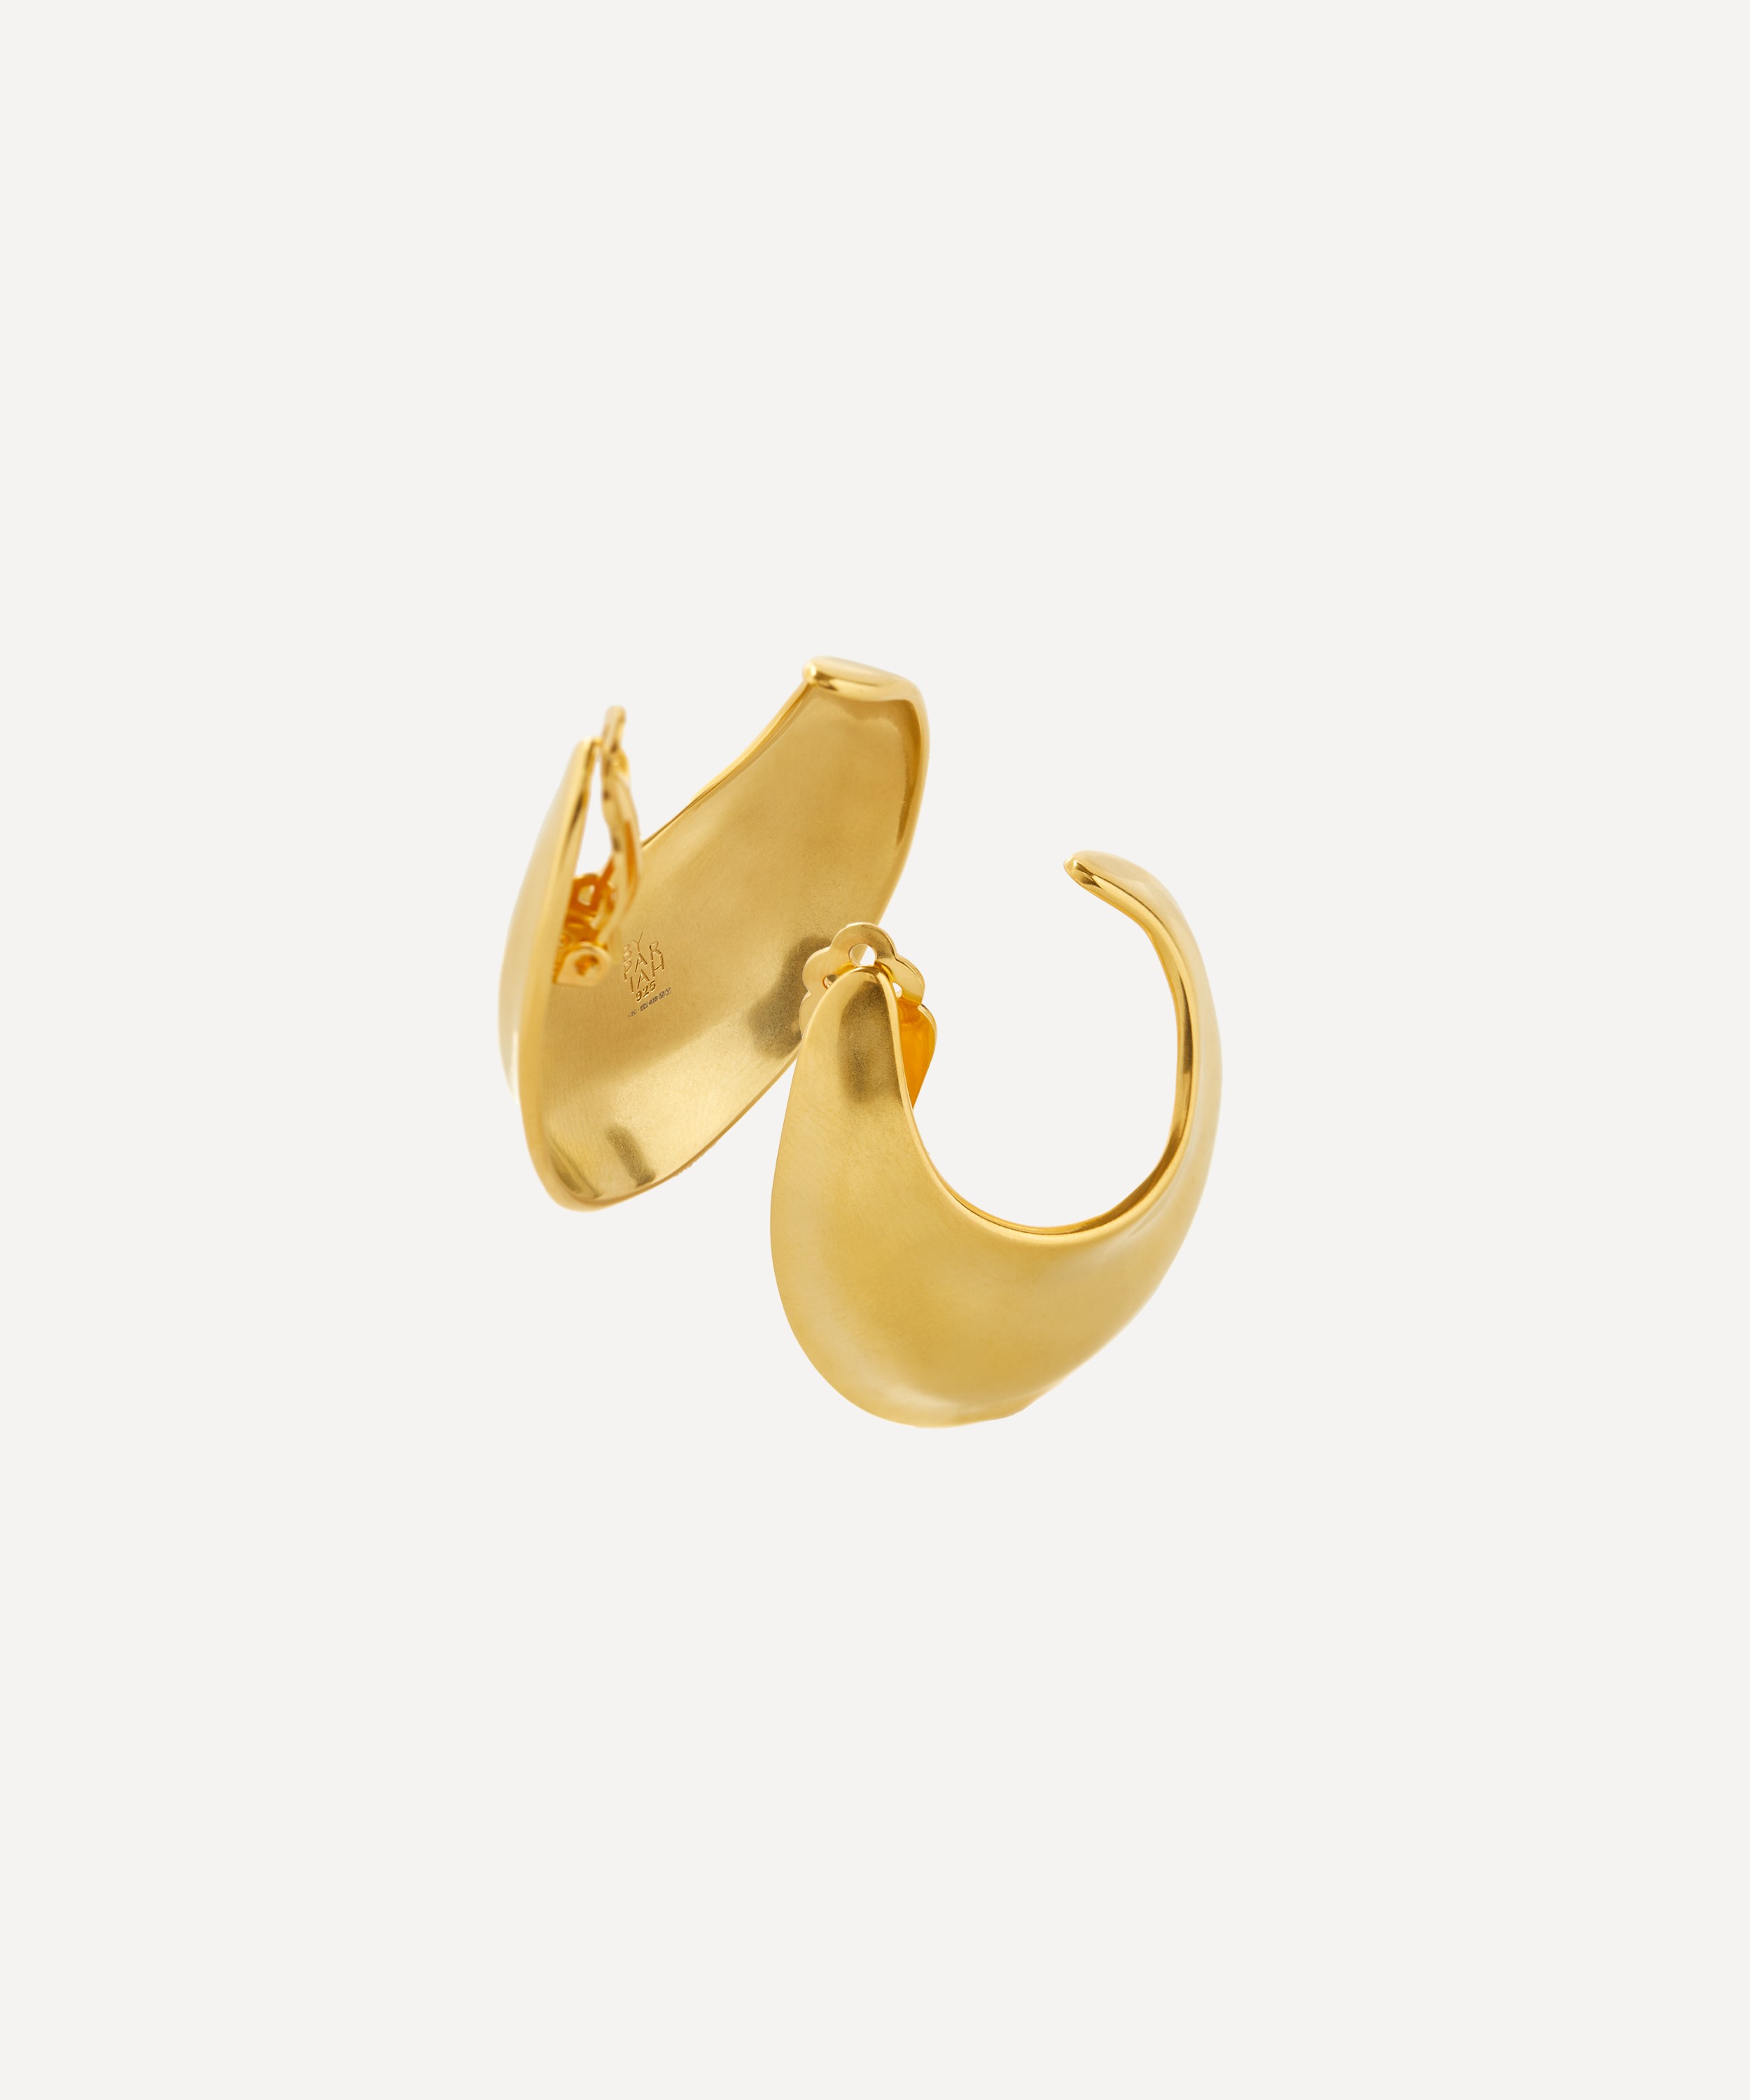 By Pariah - 14ct Gold-Plated Vermeil Sabine Hoop Earrings